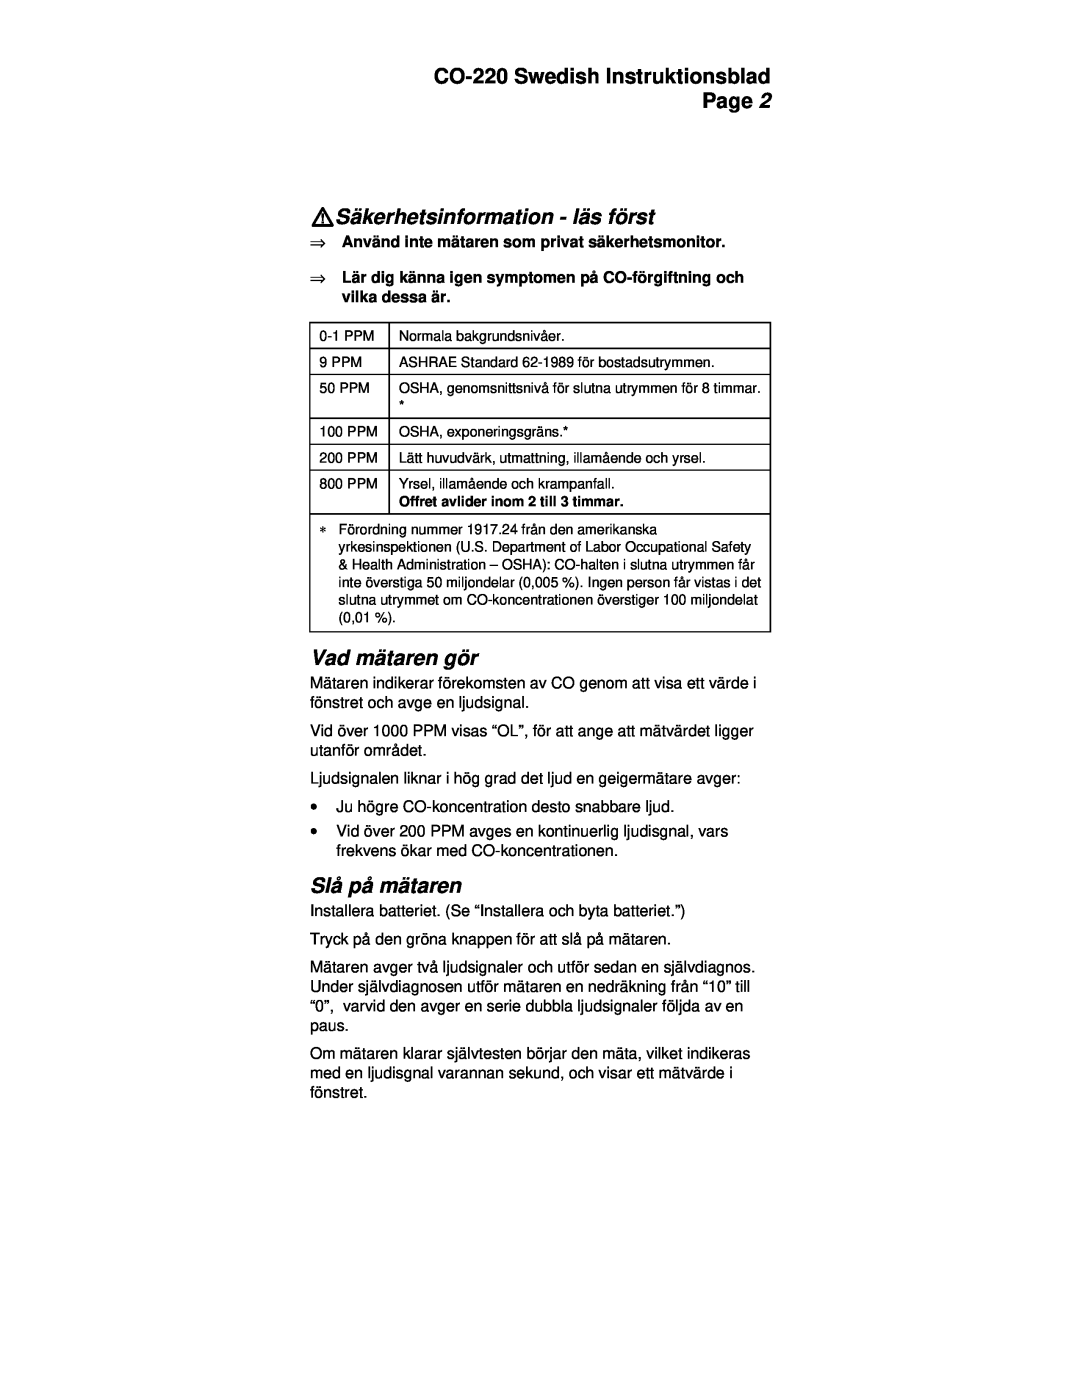 Fluke manual WSäkerhetsinformation - läs först, Vad mätaren gör, Slå på mätaren, CO-220Swedish Instruktionsblad Page 